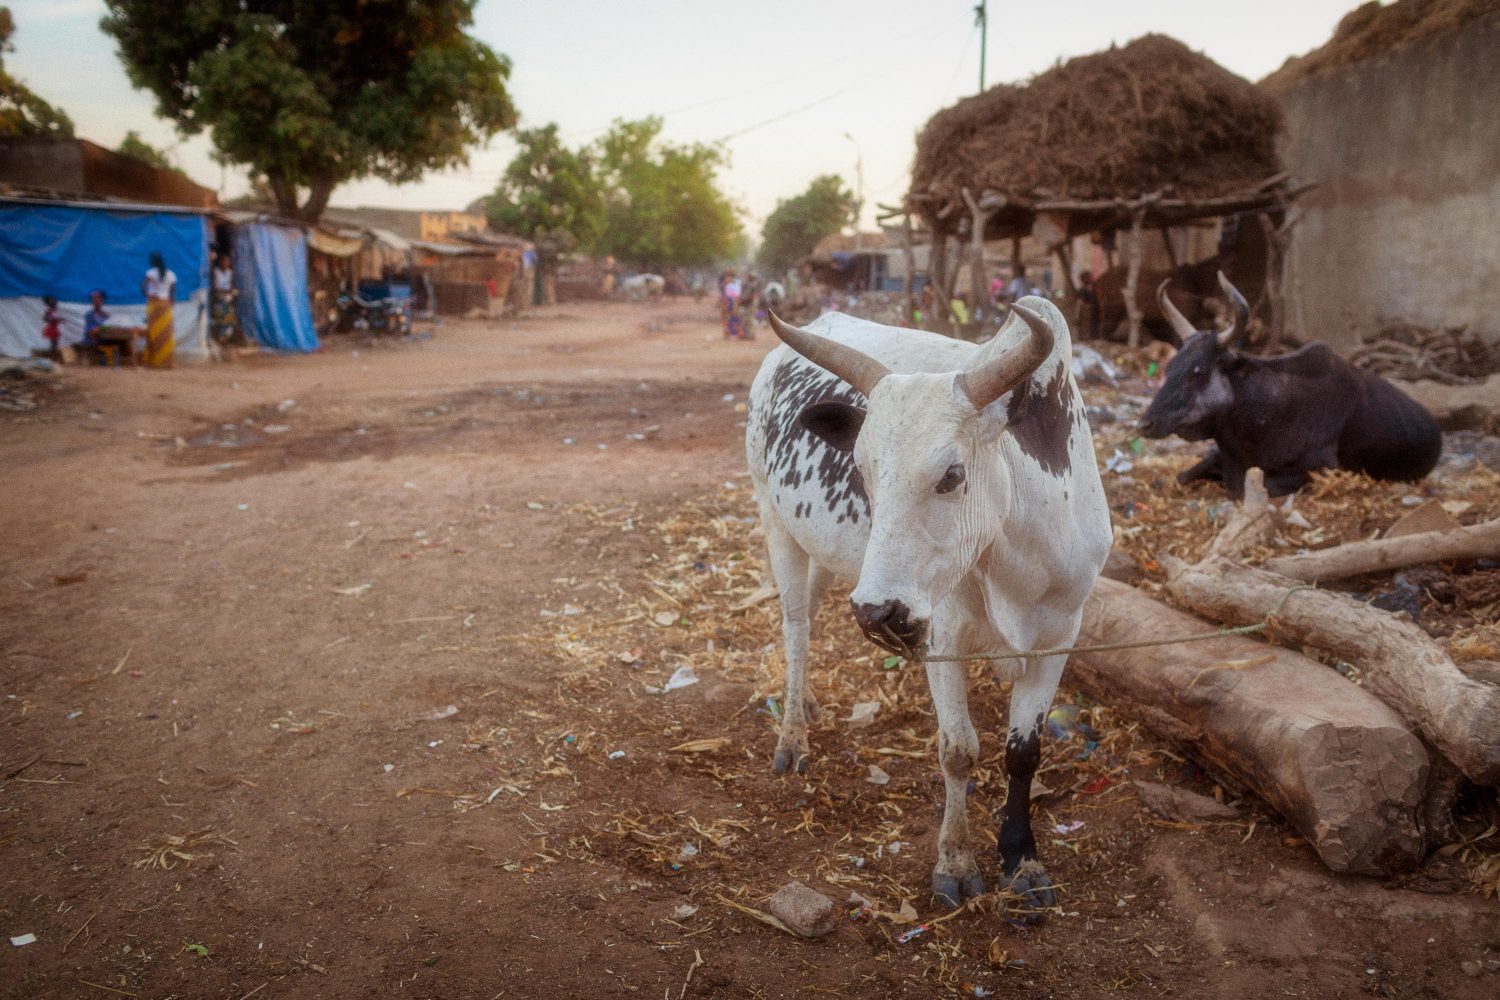 Kuh auf der Straße in Mali Afrika